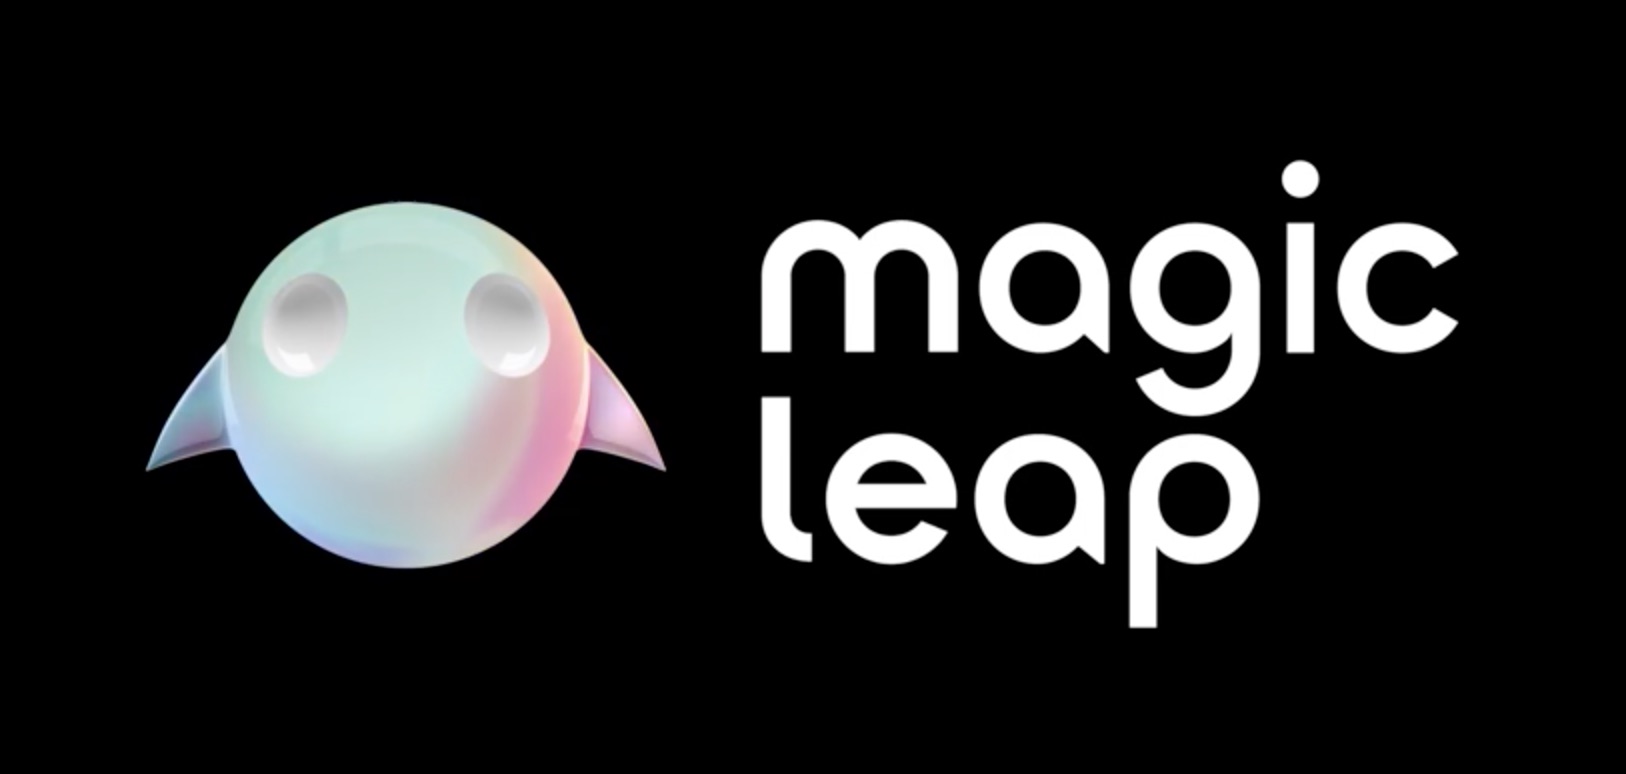 magic leap 的真实面貌被曝光:你看到的那些增强现实演示是特效公司做